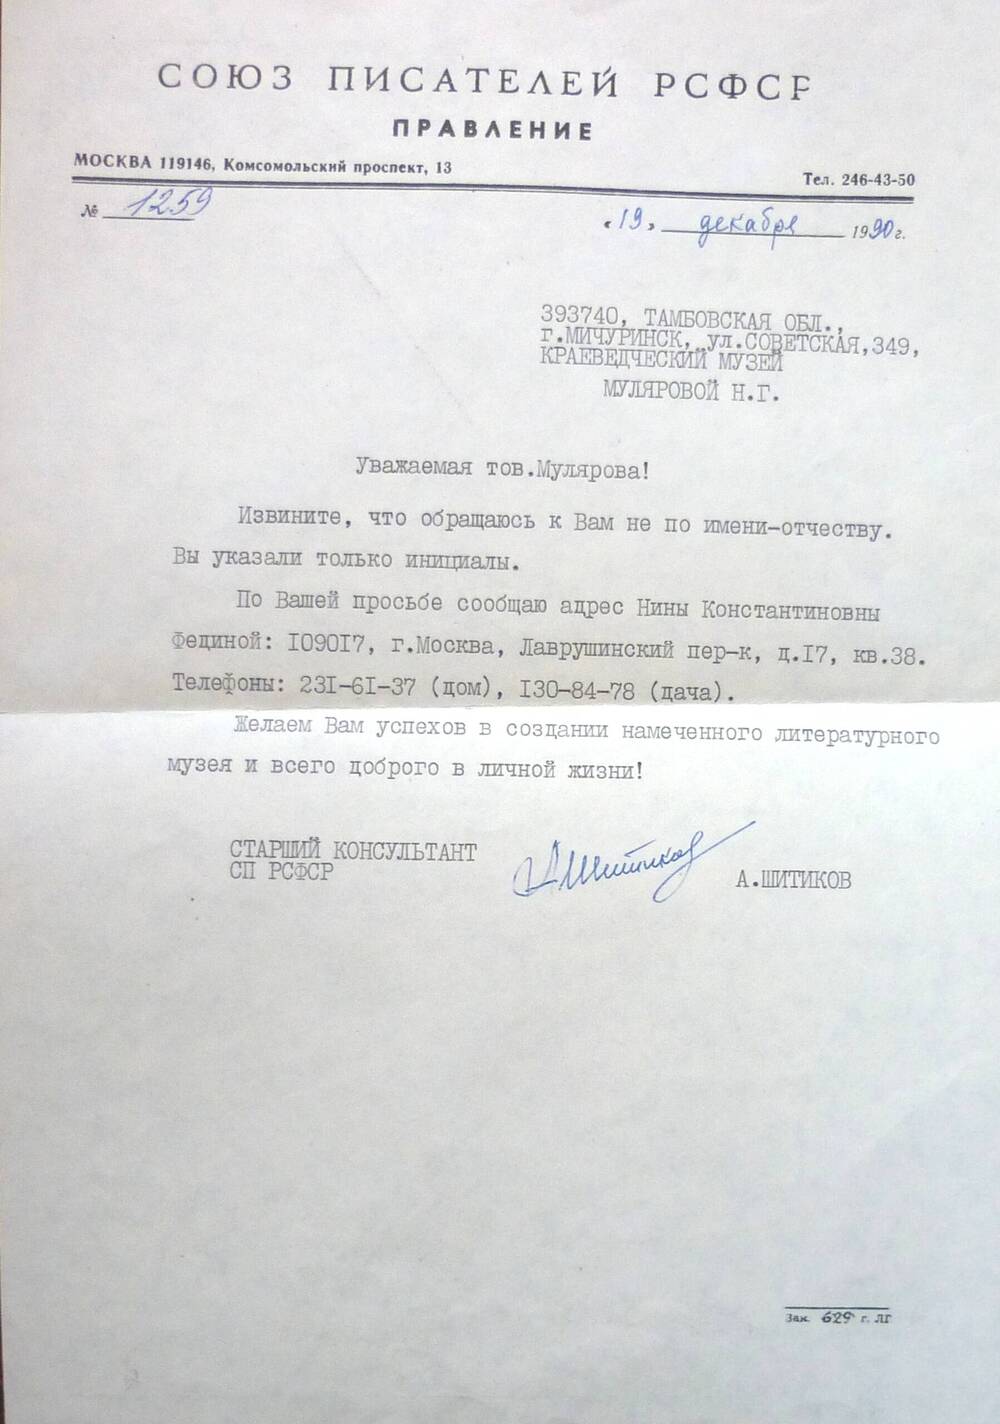 Письмо от правления Союза писателей РСФСР от 19/XII-90